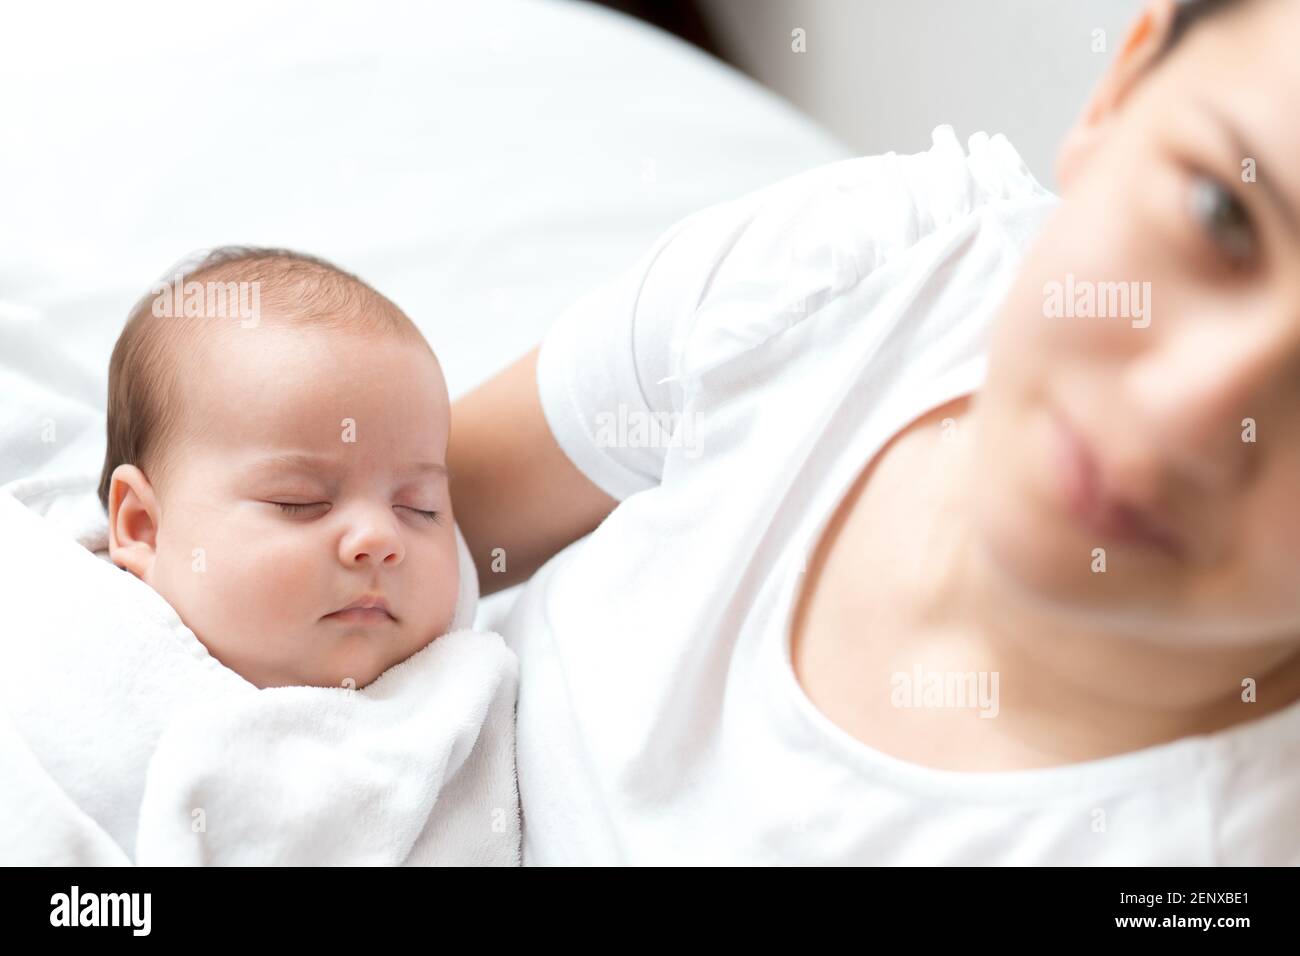 Nahaufnahme Porträt von Mutter mit neugeborenem Baby auf weißem Hintergrund Kopie Raum. Junge nette kaukasische Frau schwarz behaart halten Kind in den Armen Mutterschaft Stockfoto